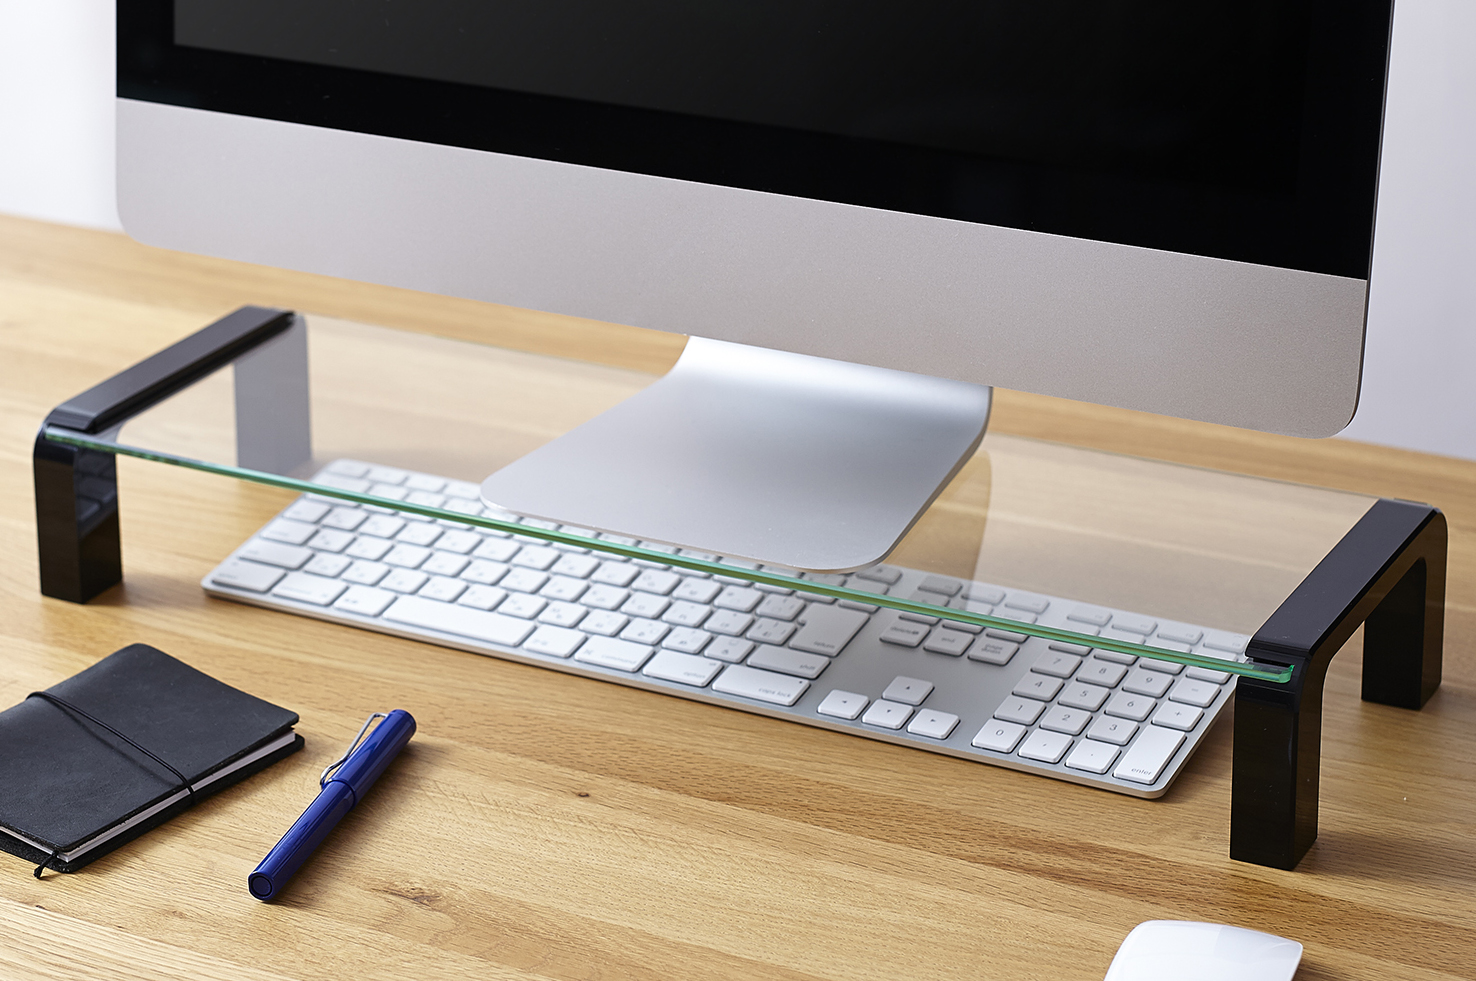 デスクボード キングジム 机上台 USBハブ付 RY8511U - オフィス家具